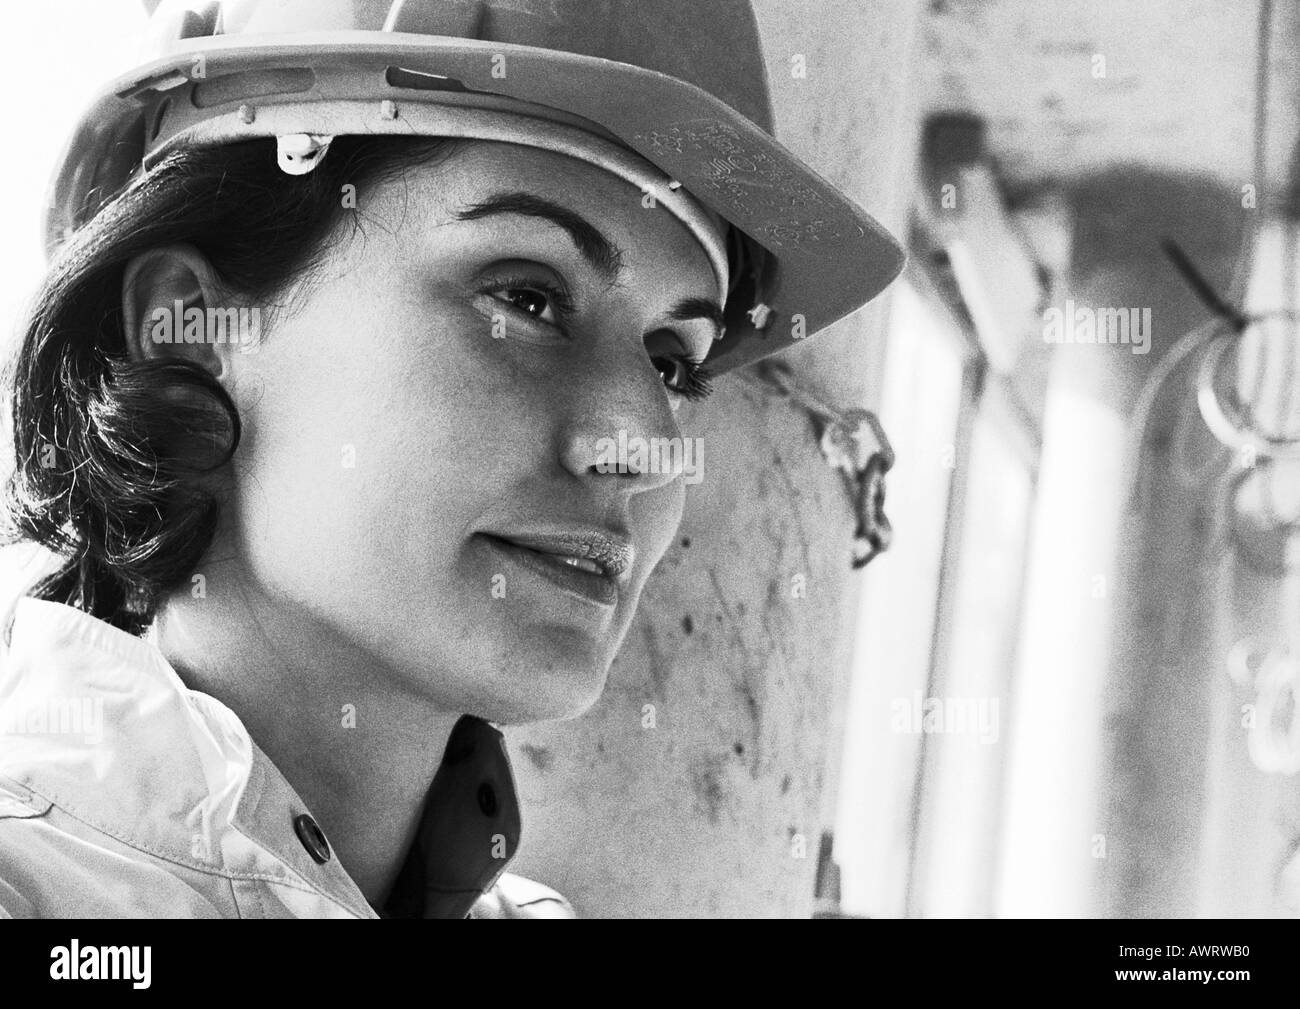 Woman wearing hard hat, close-up, b&w Stock Photo